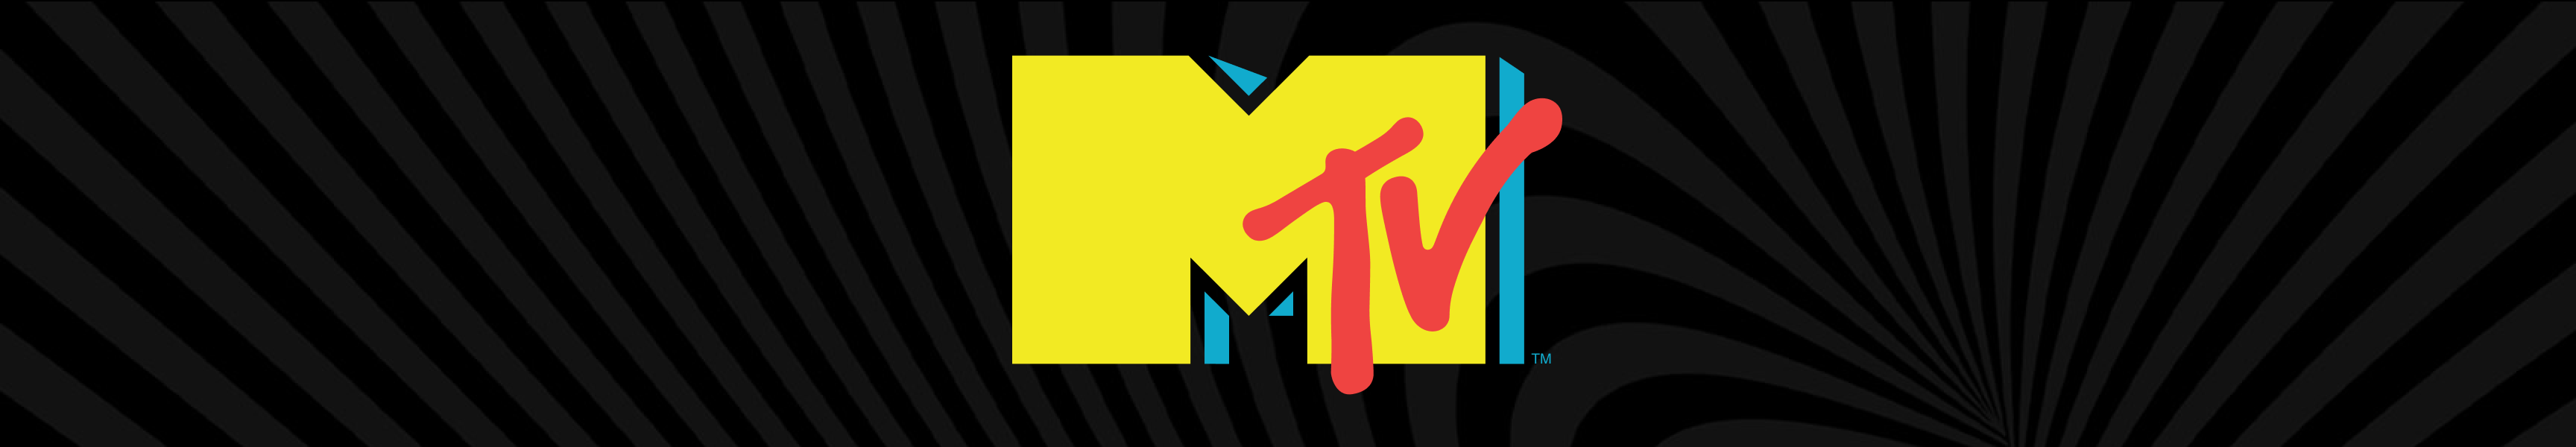 MTV Trinkgeschirr